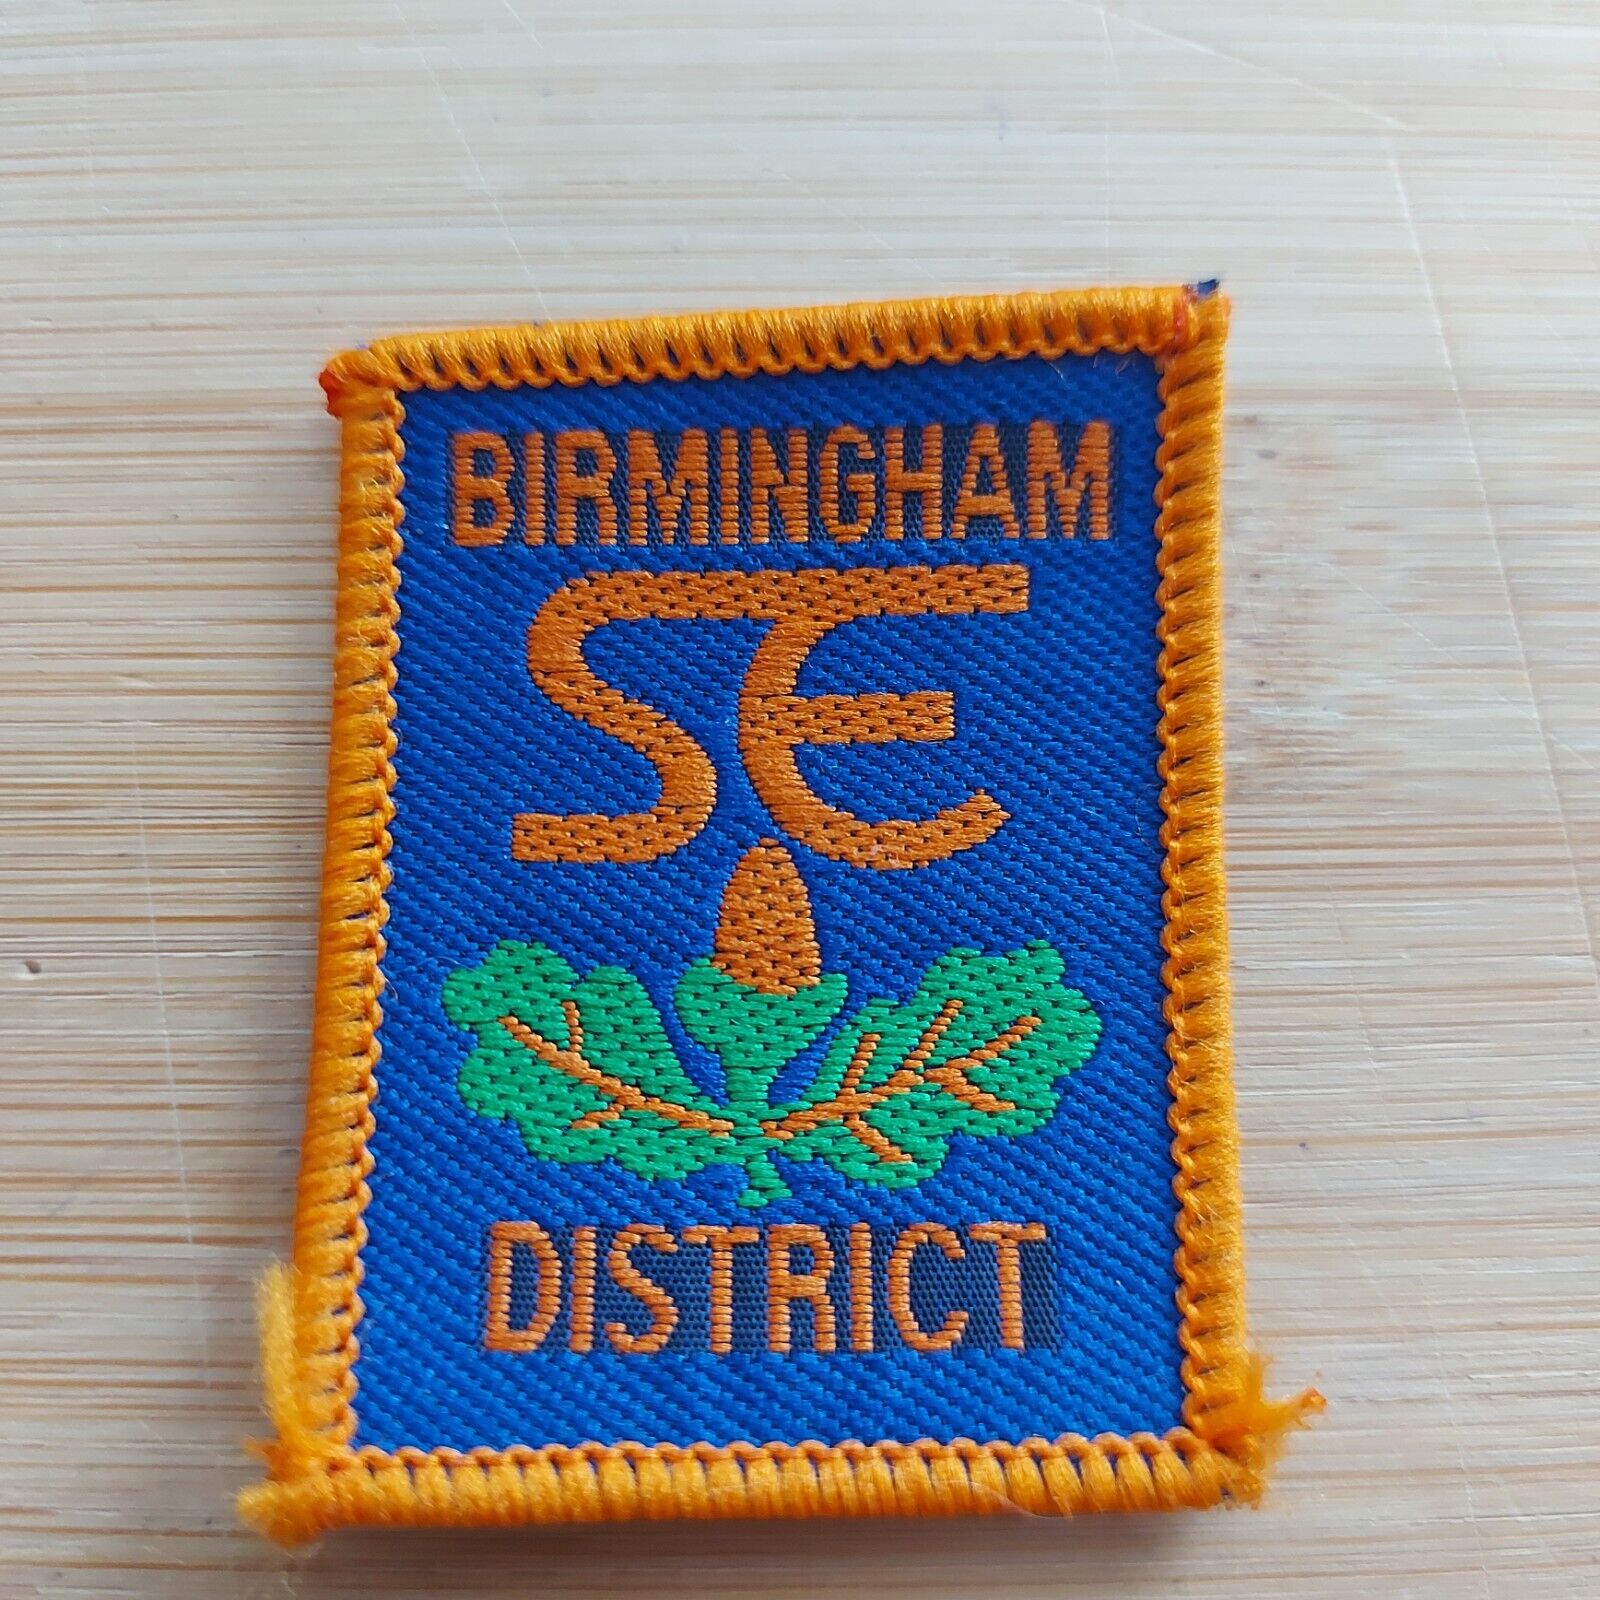 UK Scouting District Badge Birmingham SE